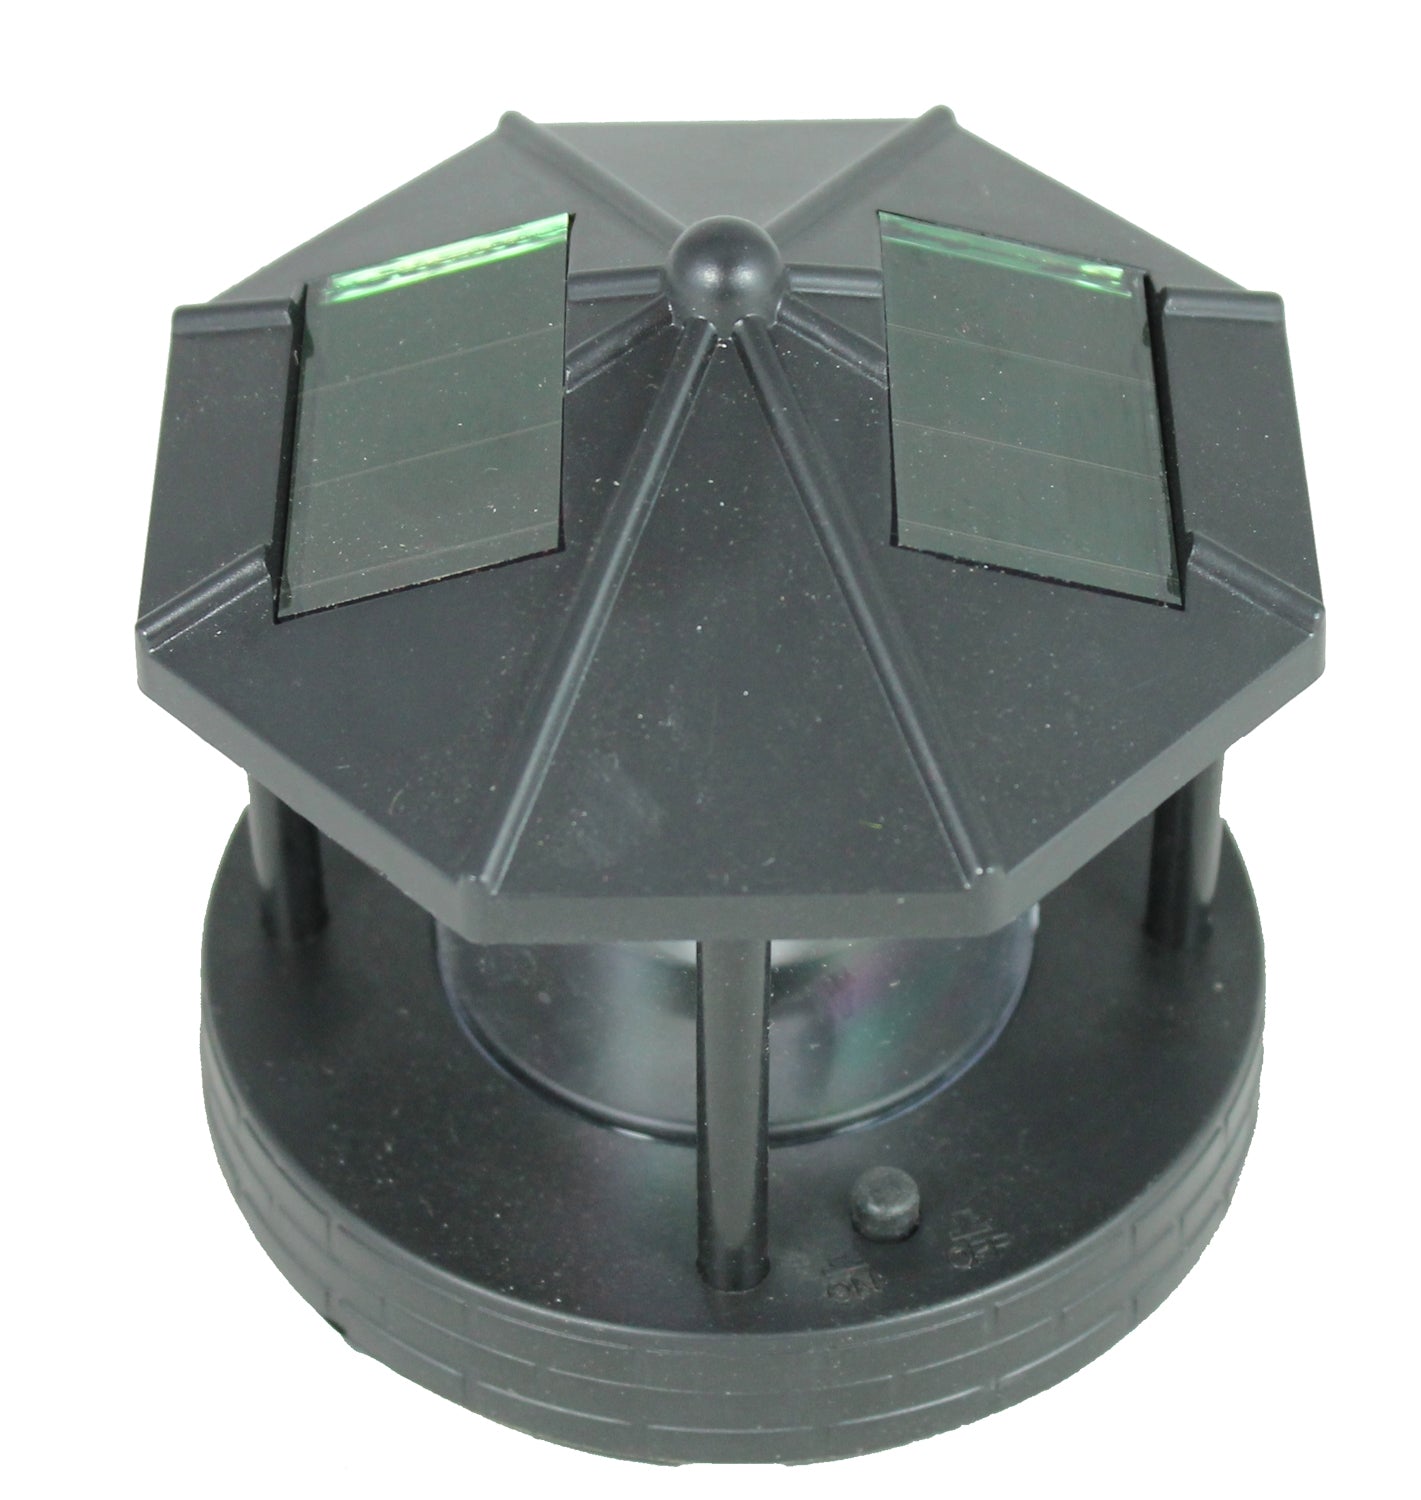 Leuchtturm Ersatzkopf für Deko Solar Leuchttürme mit Leuchtfeuer drehbar Solarkopf Ersatzteil